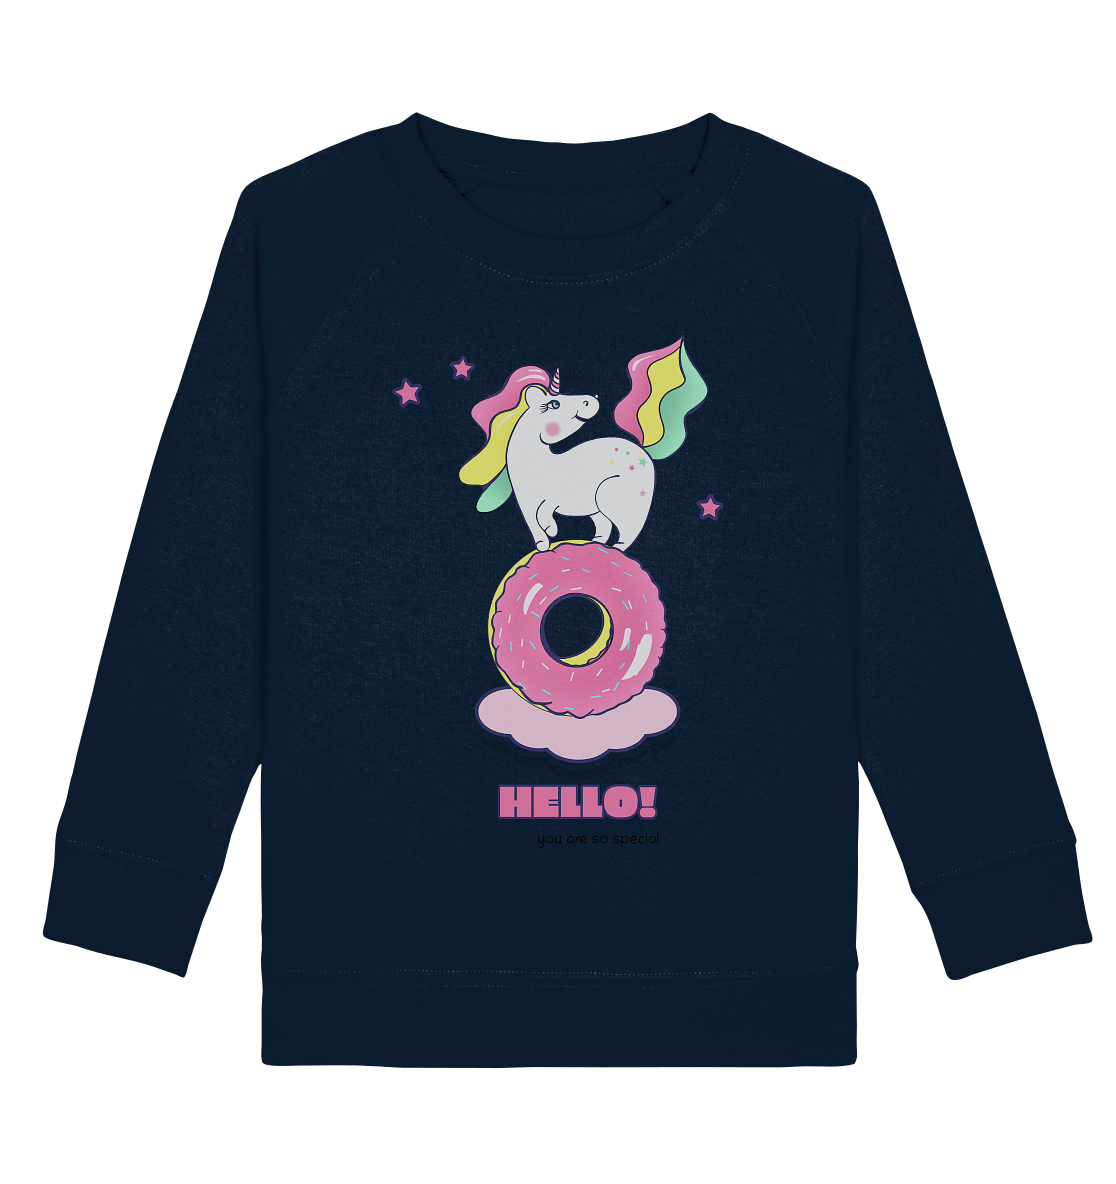 Einhorn Kinder Sweatshirt in navy blau mit witzigen Einhorn auf pinken Donut Print von BLOOMINIC